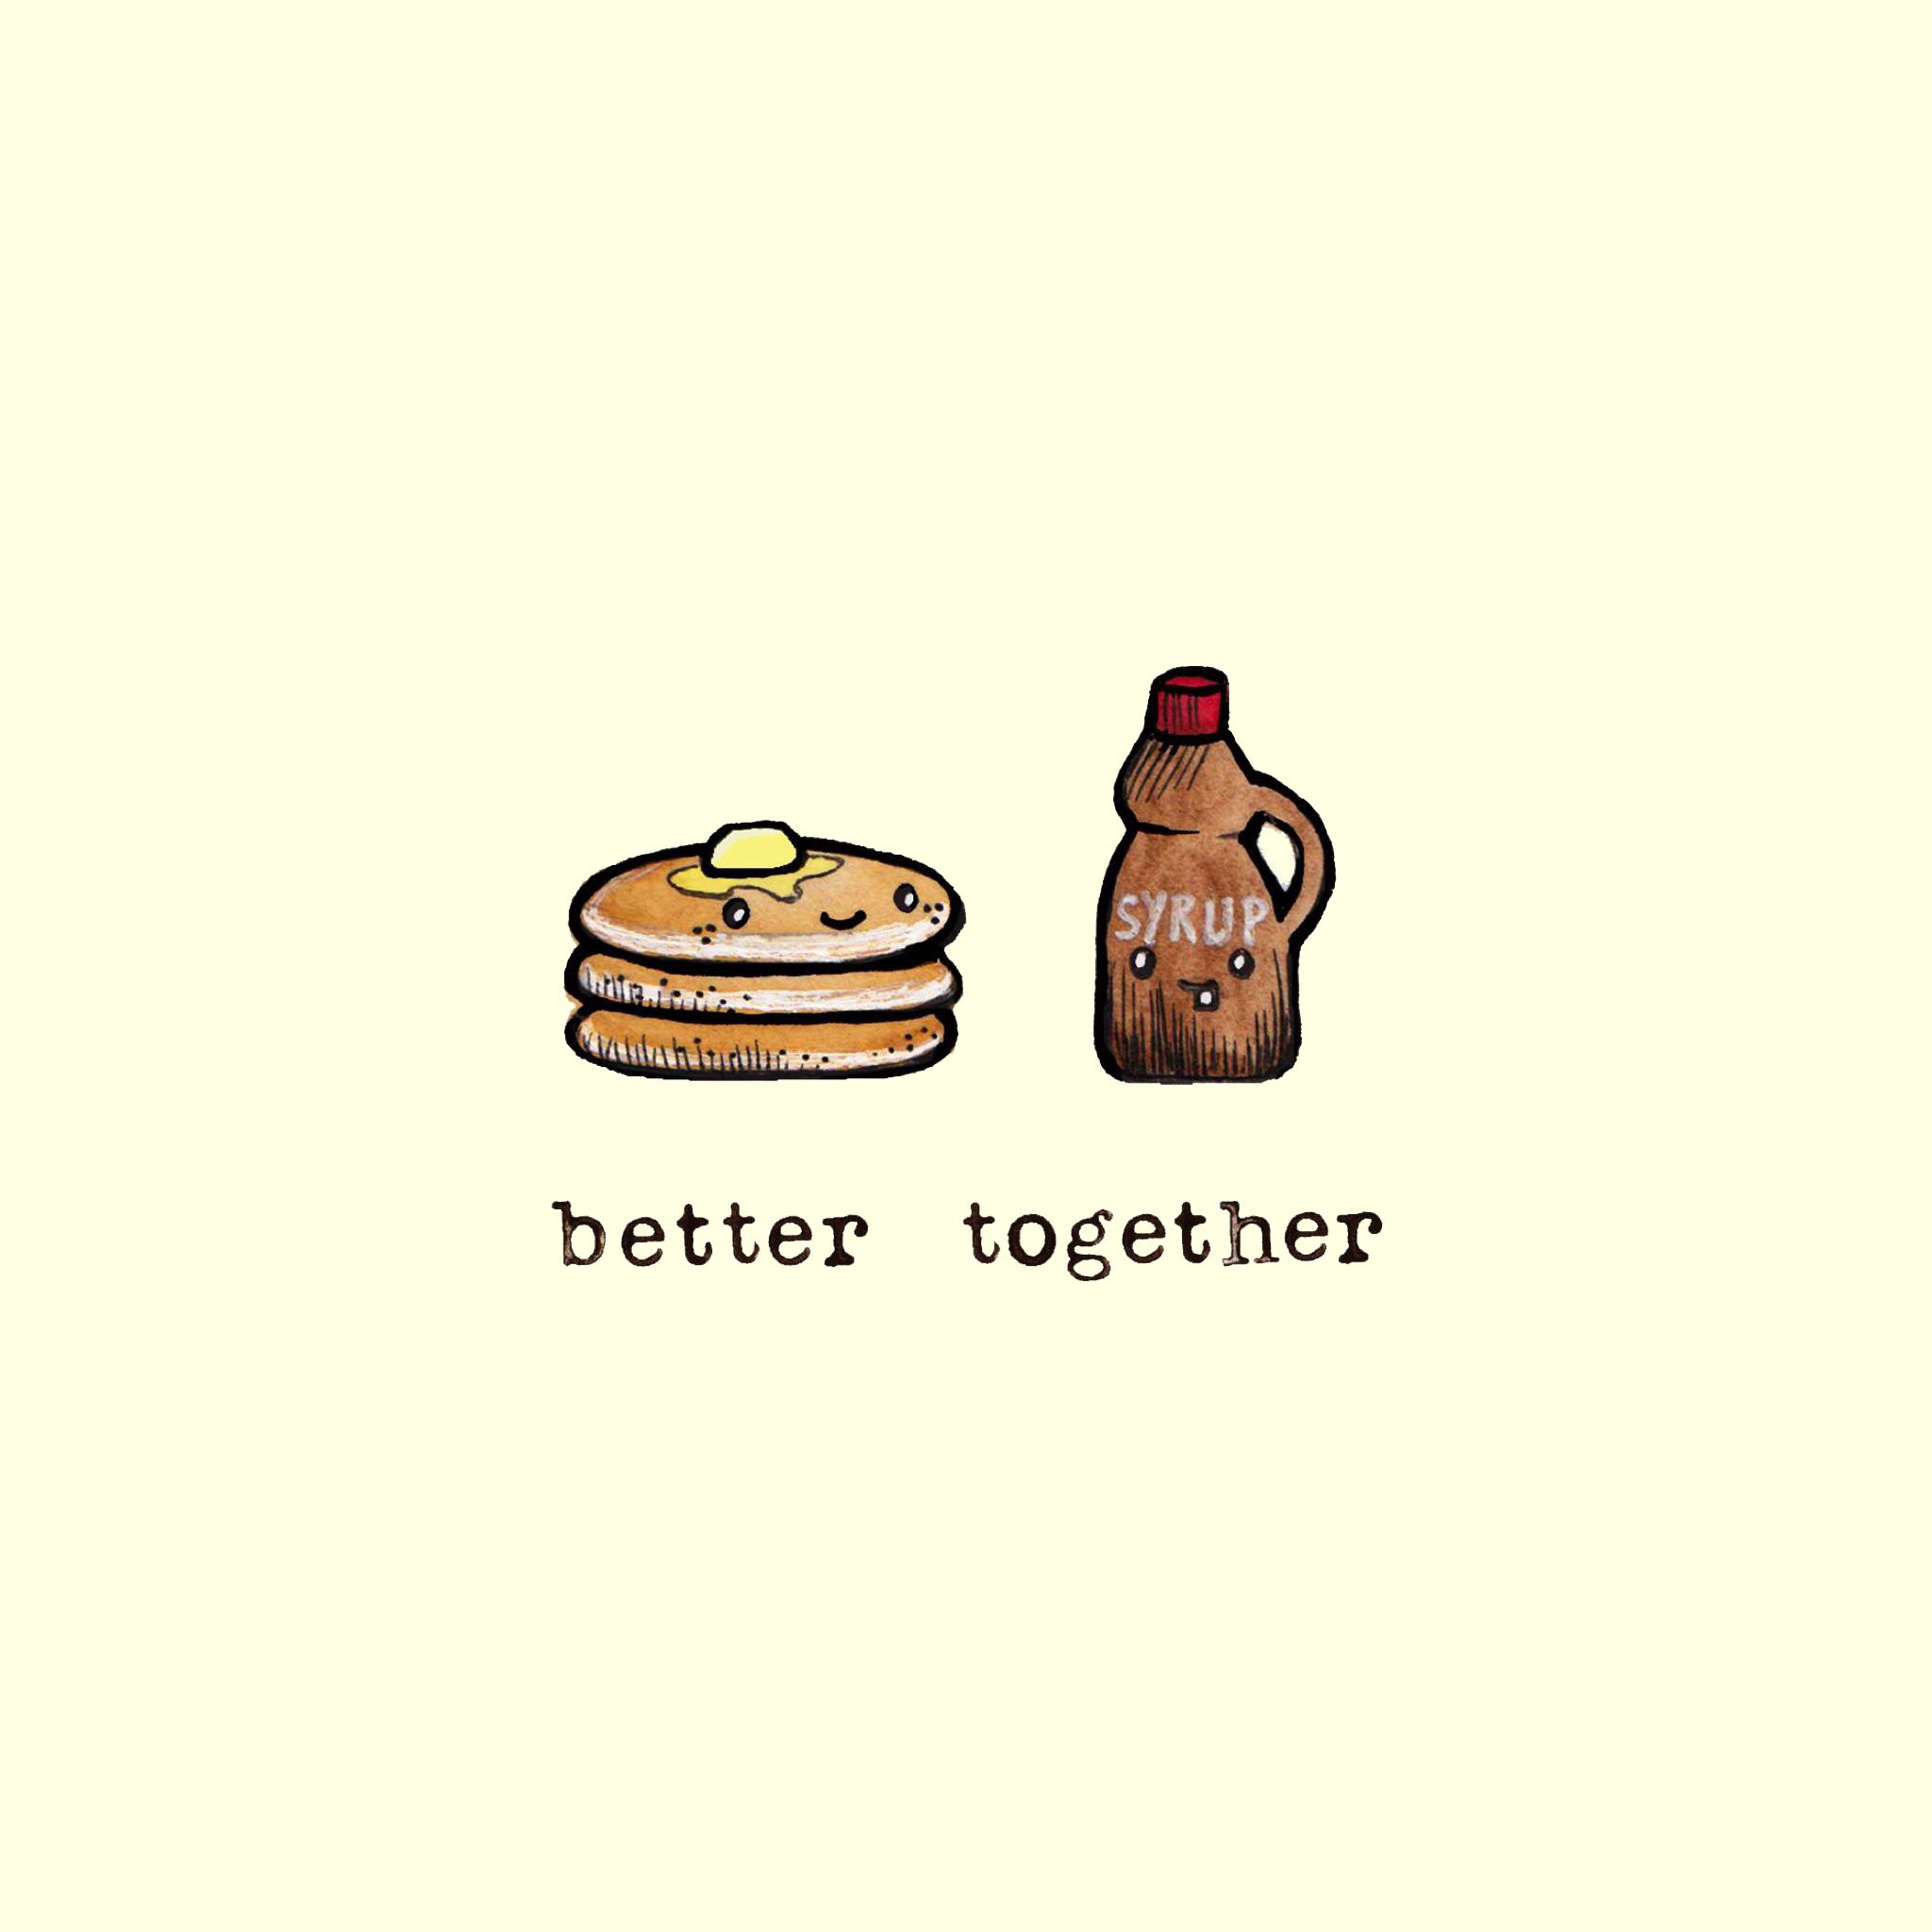 2048x2048, Cute Cartoon Wallpapers, Food Wallpaper, - Better Together  Backgrounds Cartoon - 2048x2048 Wallpaper 